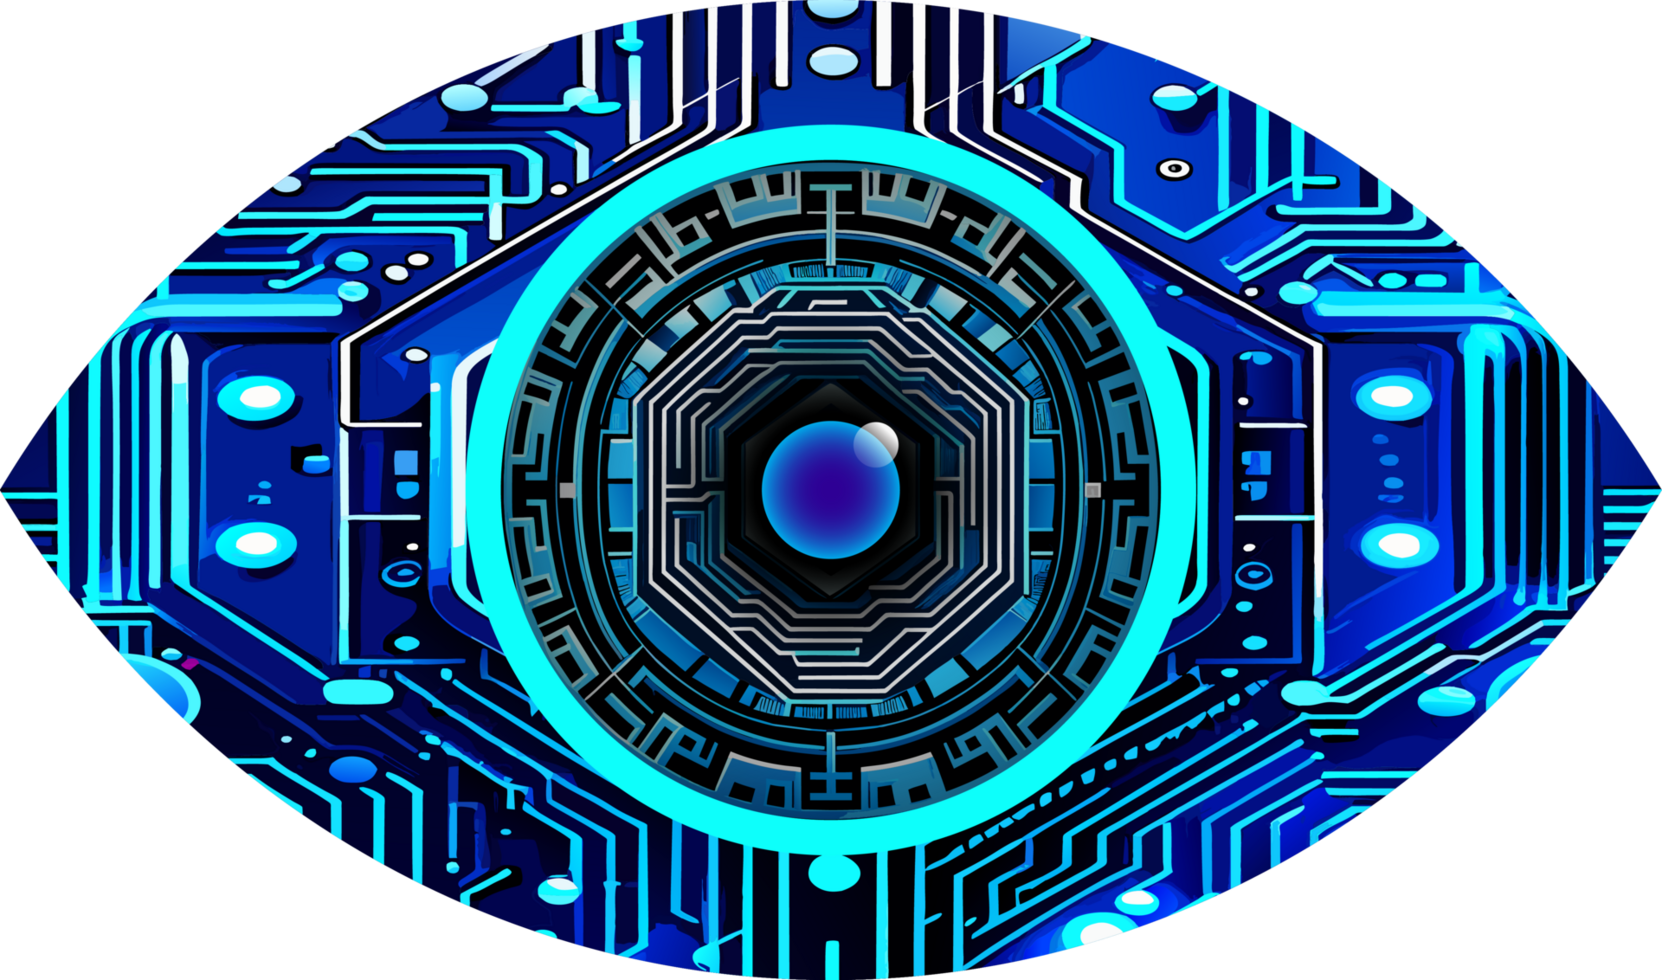 Hintergrund des zukünftigen Technologiekonzepts der Cyberschaltung des blauen Auges png